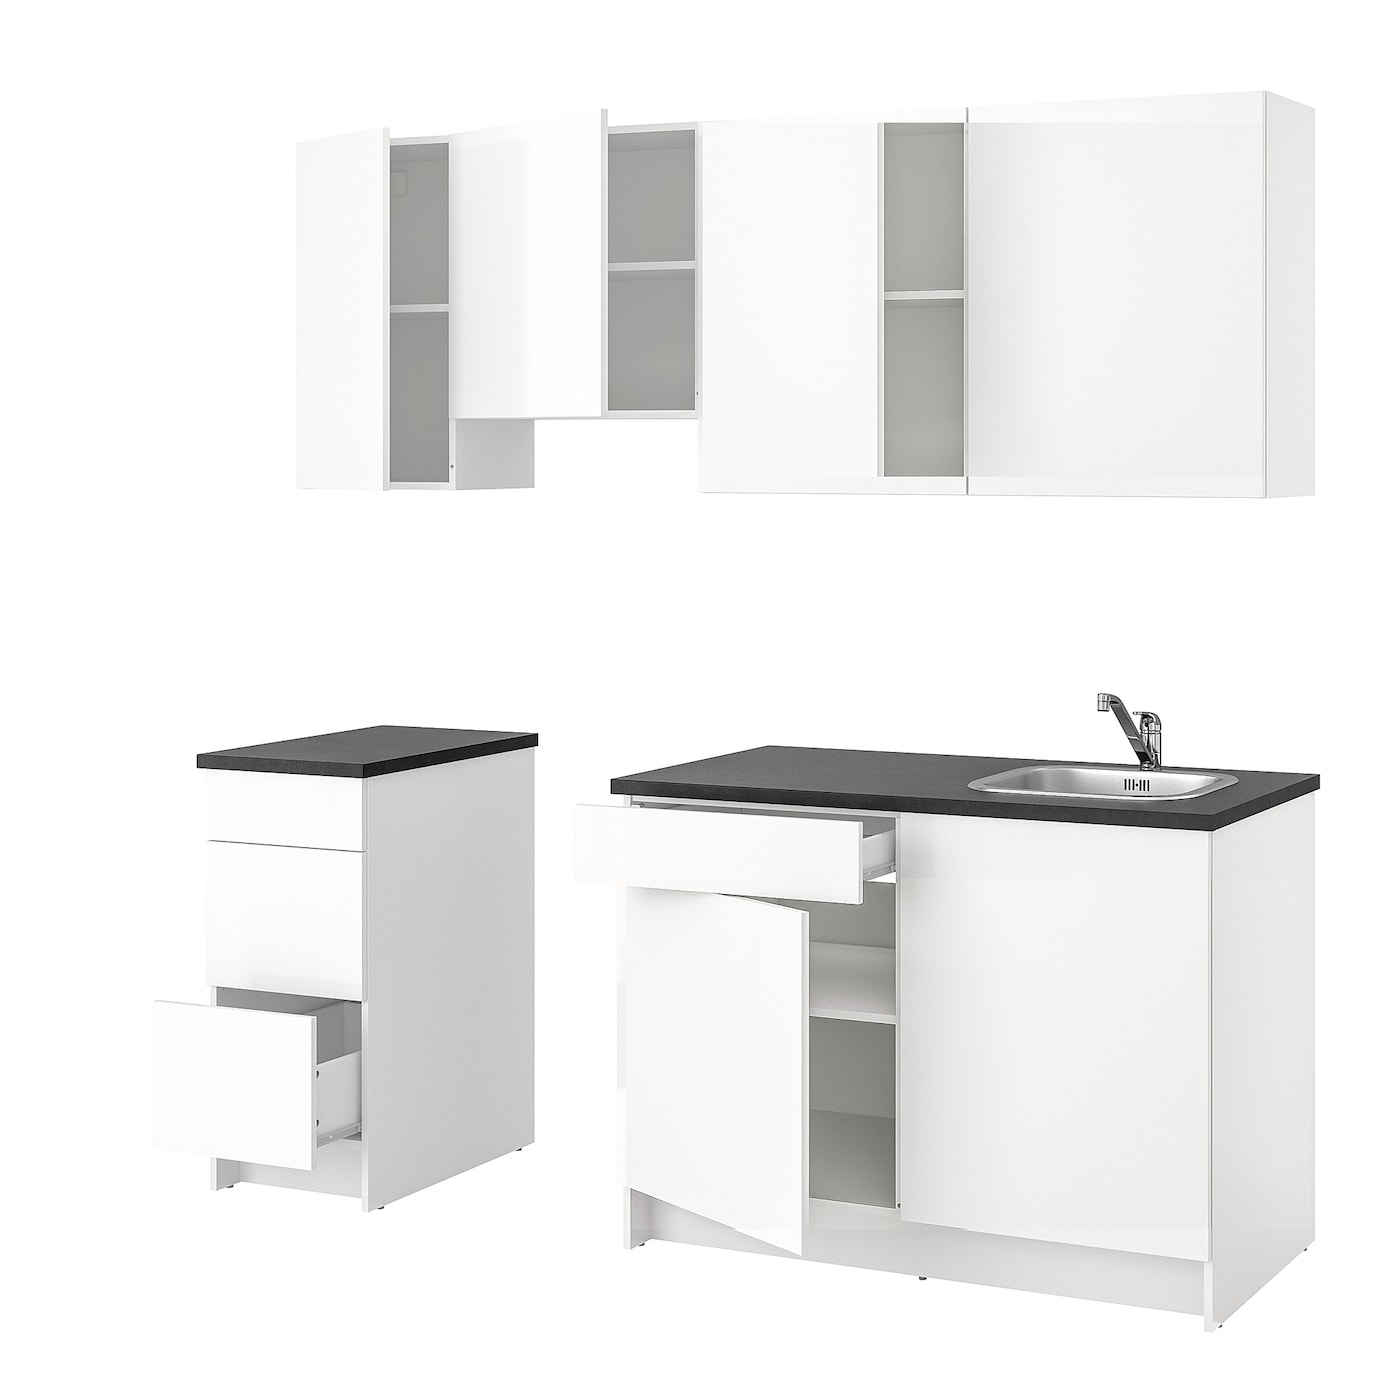 Кухонная комбинация для хранения -   KNOXHULT IKEA/ КНОКСХУЛЬТ ИКЕА, 220x61x220 см, серый/белый